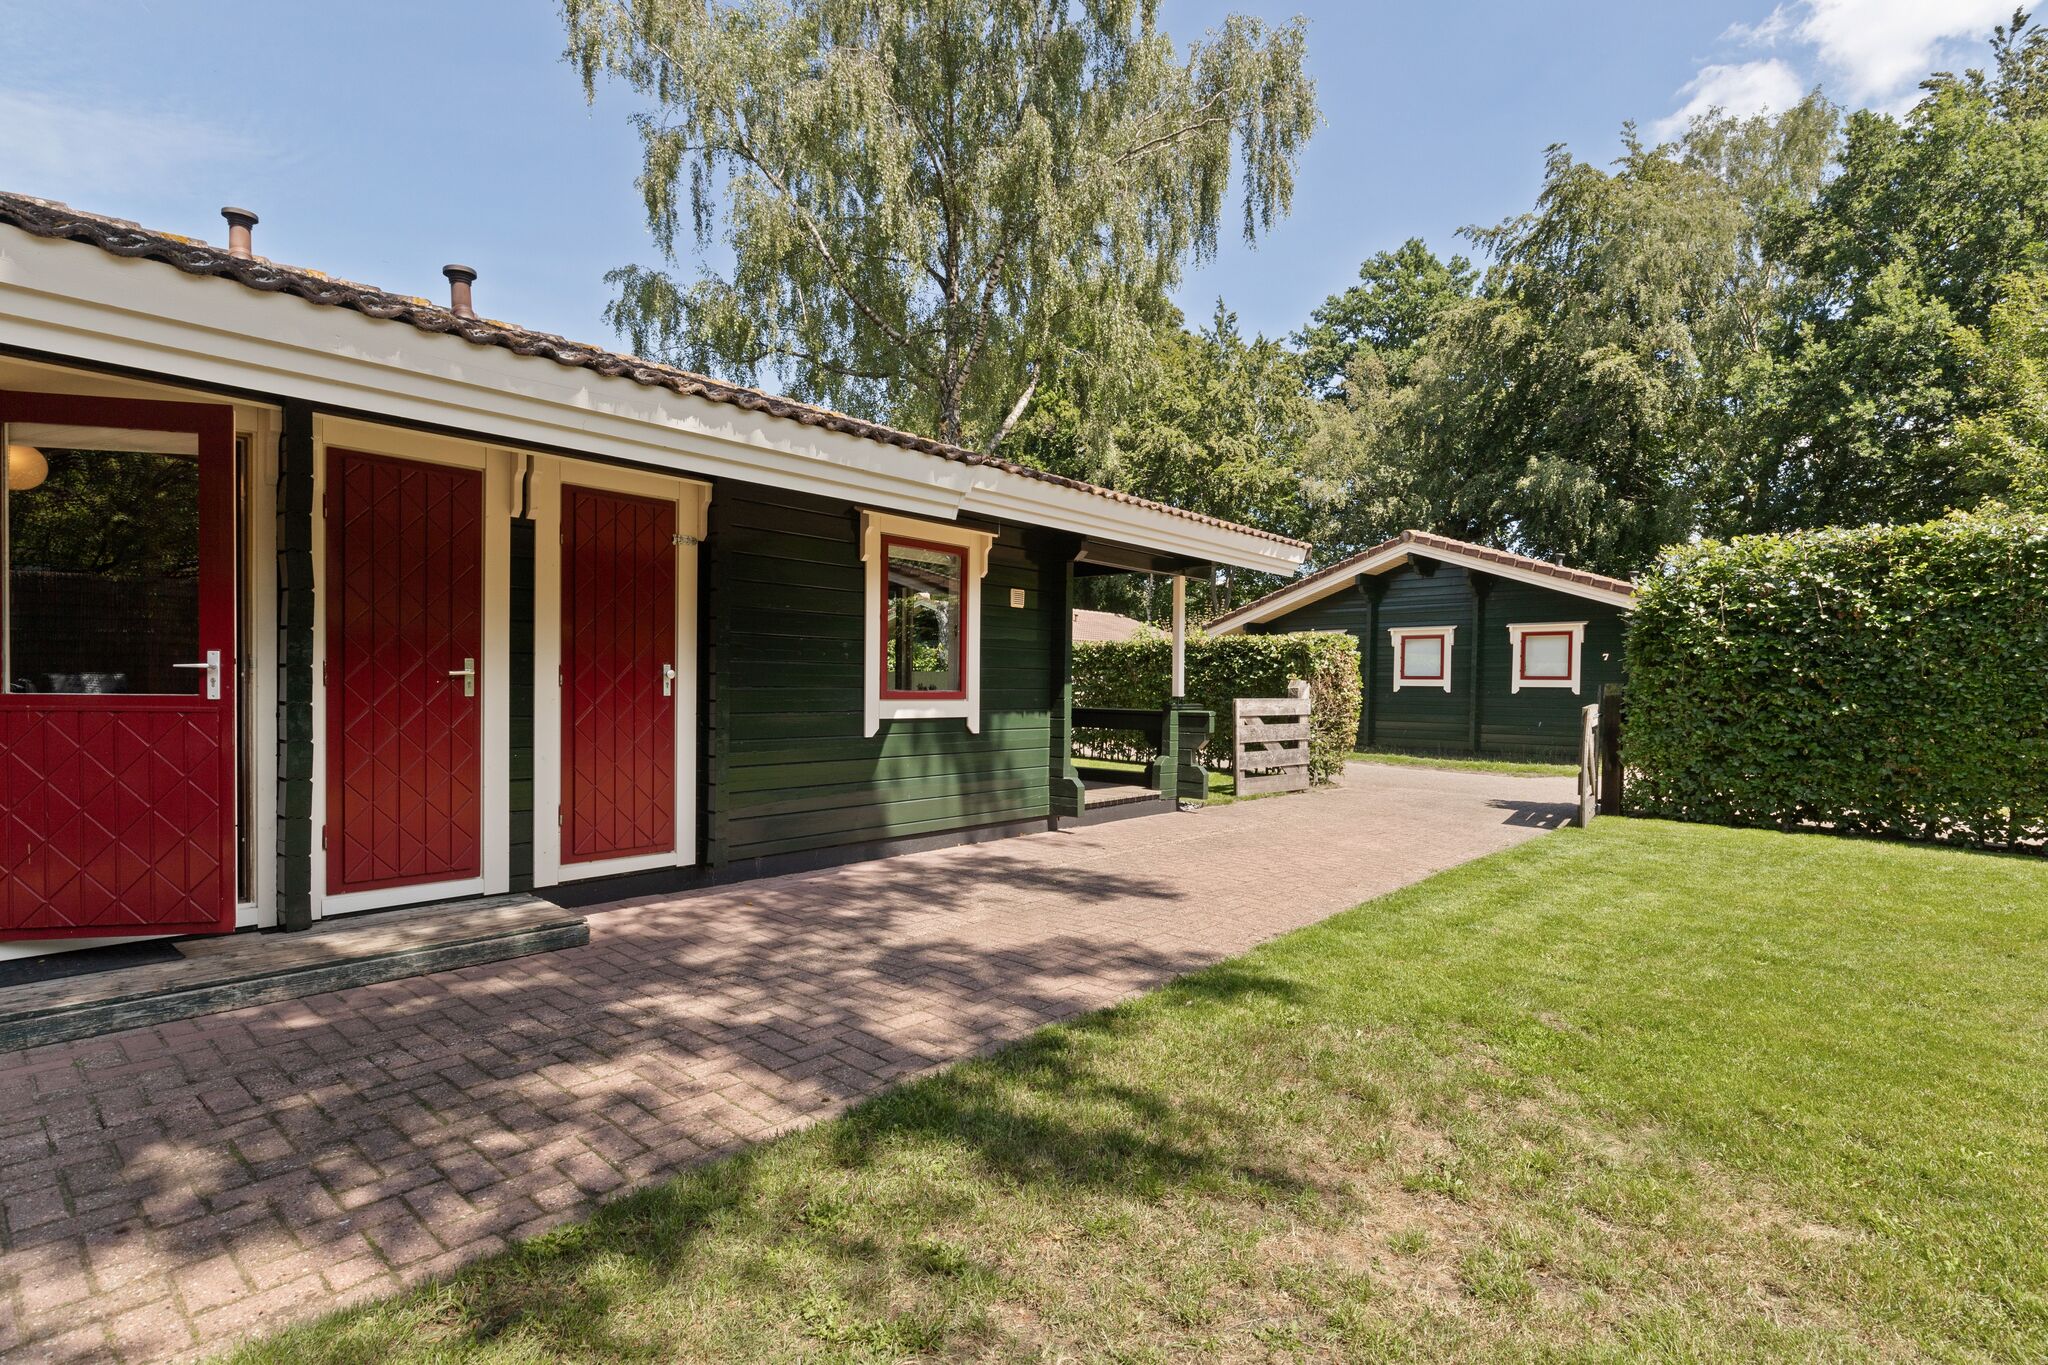 Vrijstaande bungalow in de Veluwe met een omheinde tuin